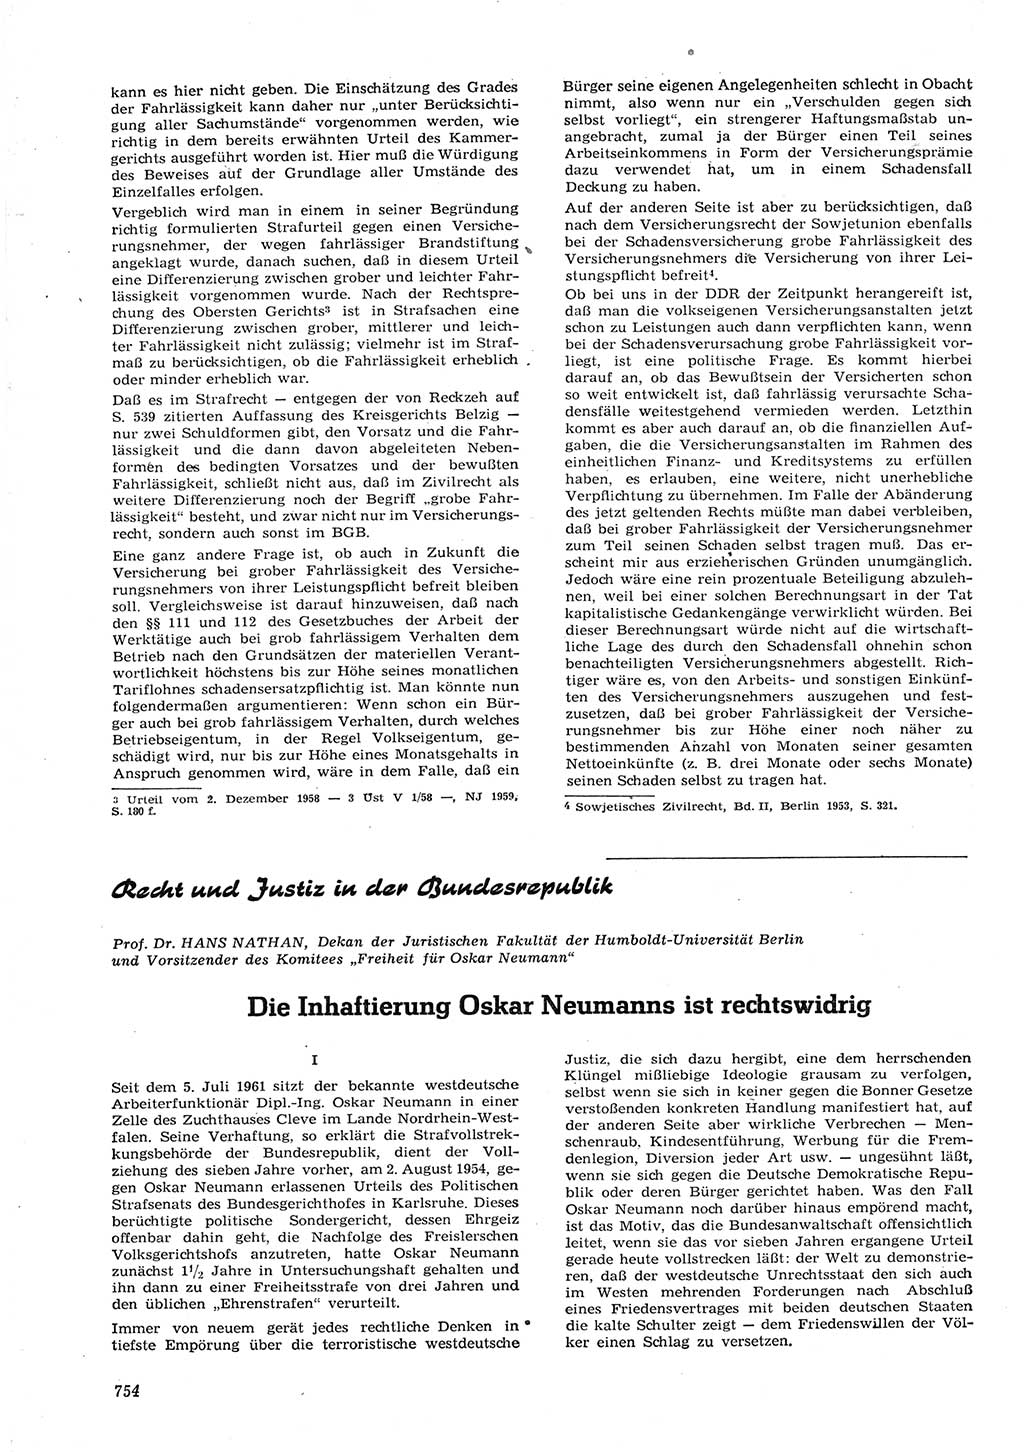 Neue Justiz (NJ), Zeitschrift für Recht und Rechtswissenschaft [Deutsche Demokratische Republik (DDR)], 15. Jahrgang 1961, Seite 754 (NJ DDR 1961, S. 754)